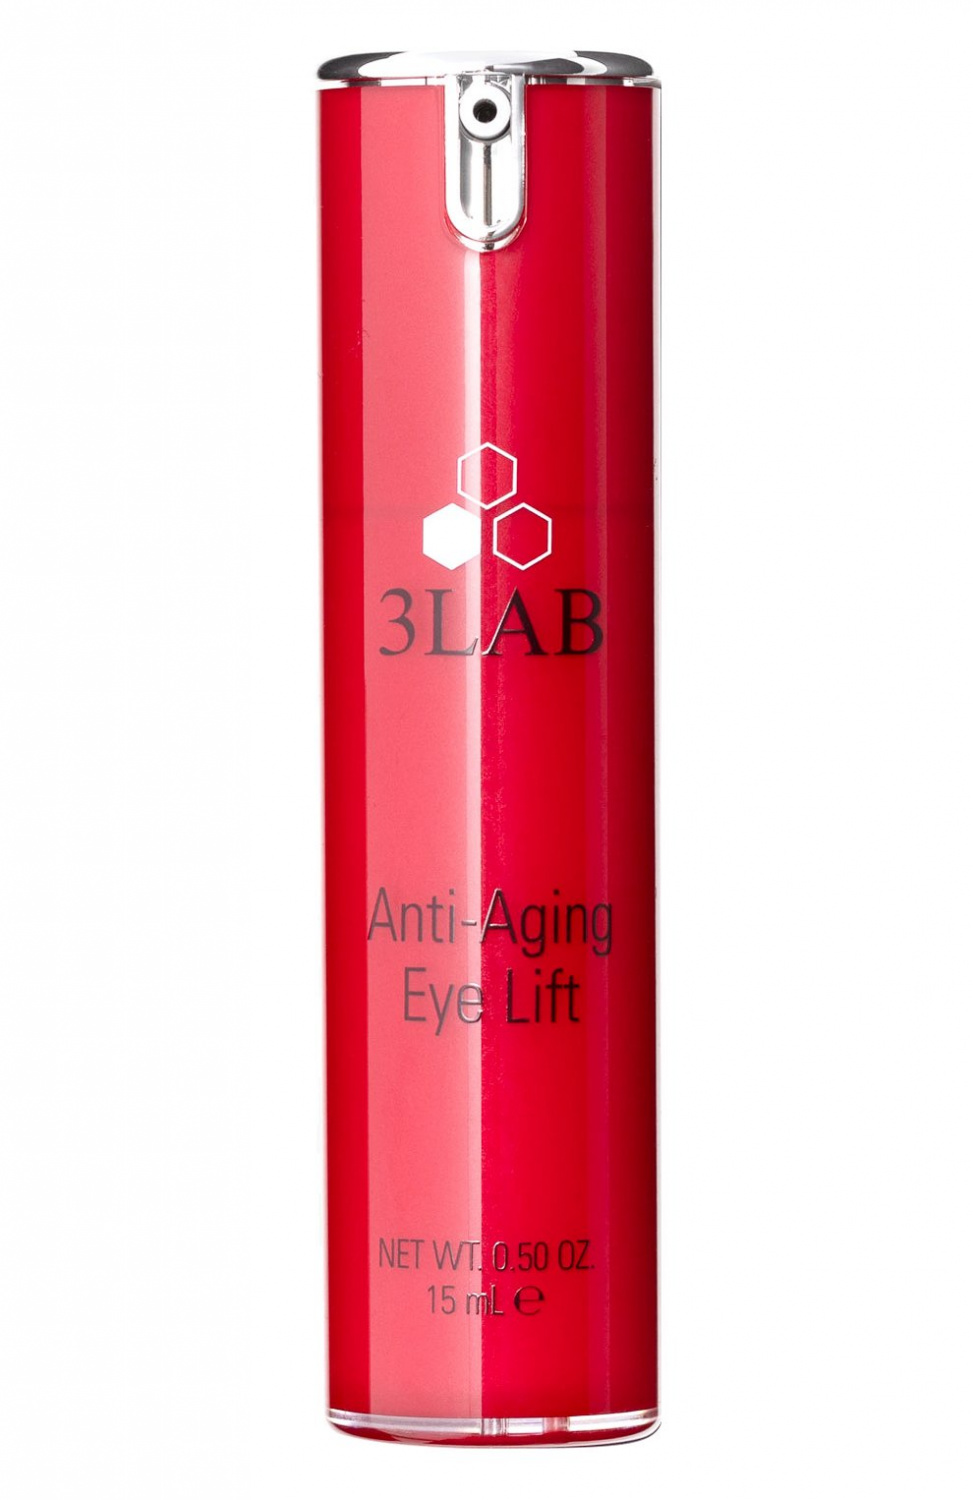 3LAB Anti-Aging Eye Lift 15ml - интернет-магазин профессиональной косметики Spadream, изображение 37304